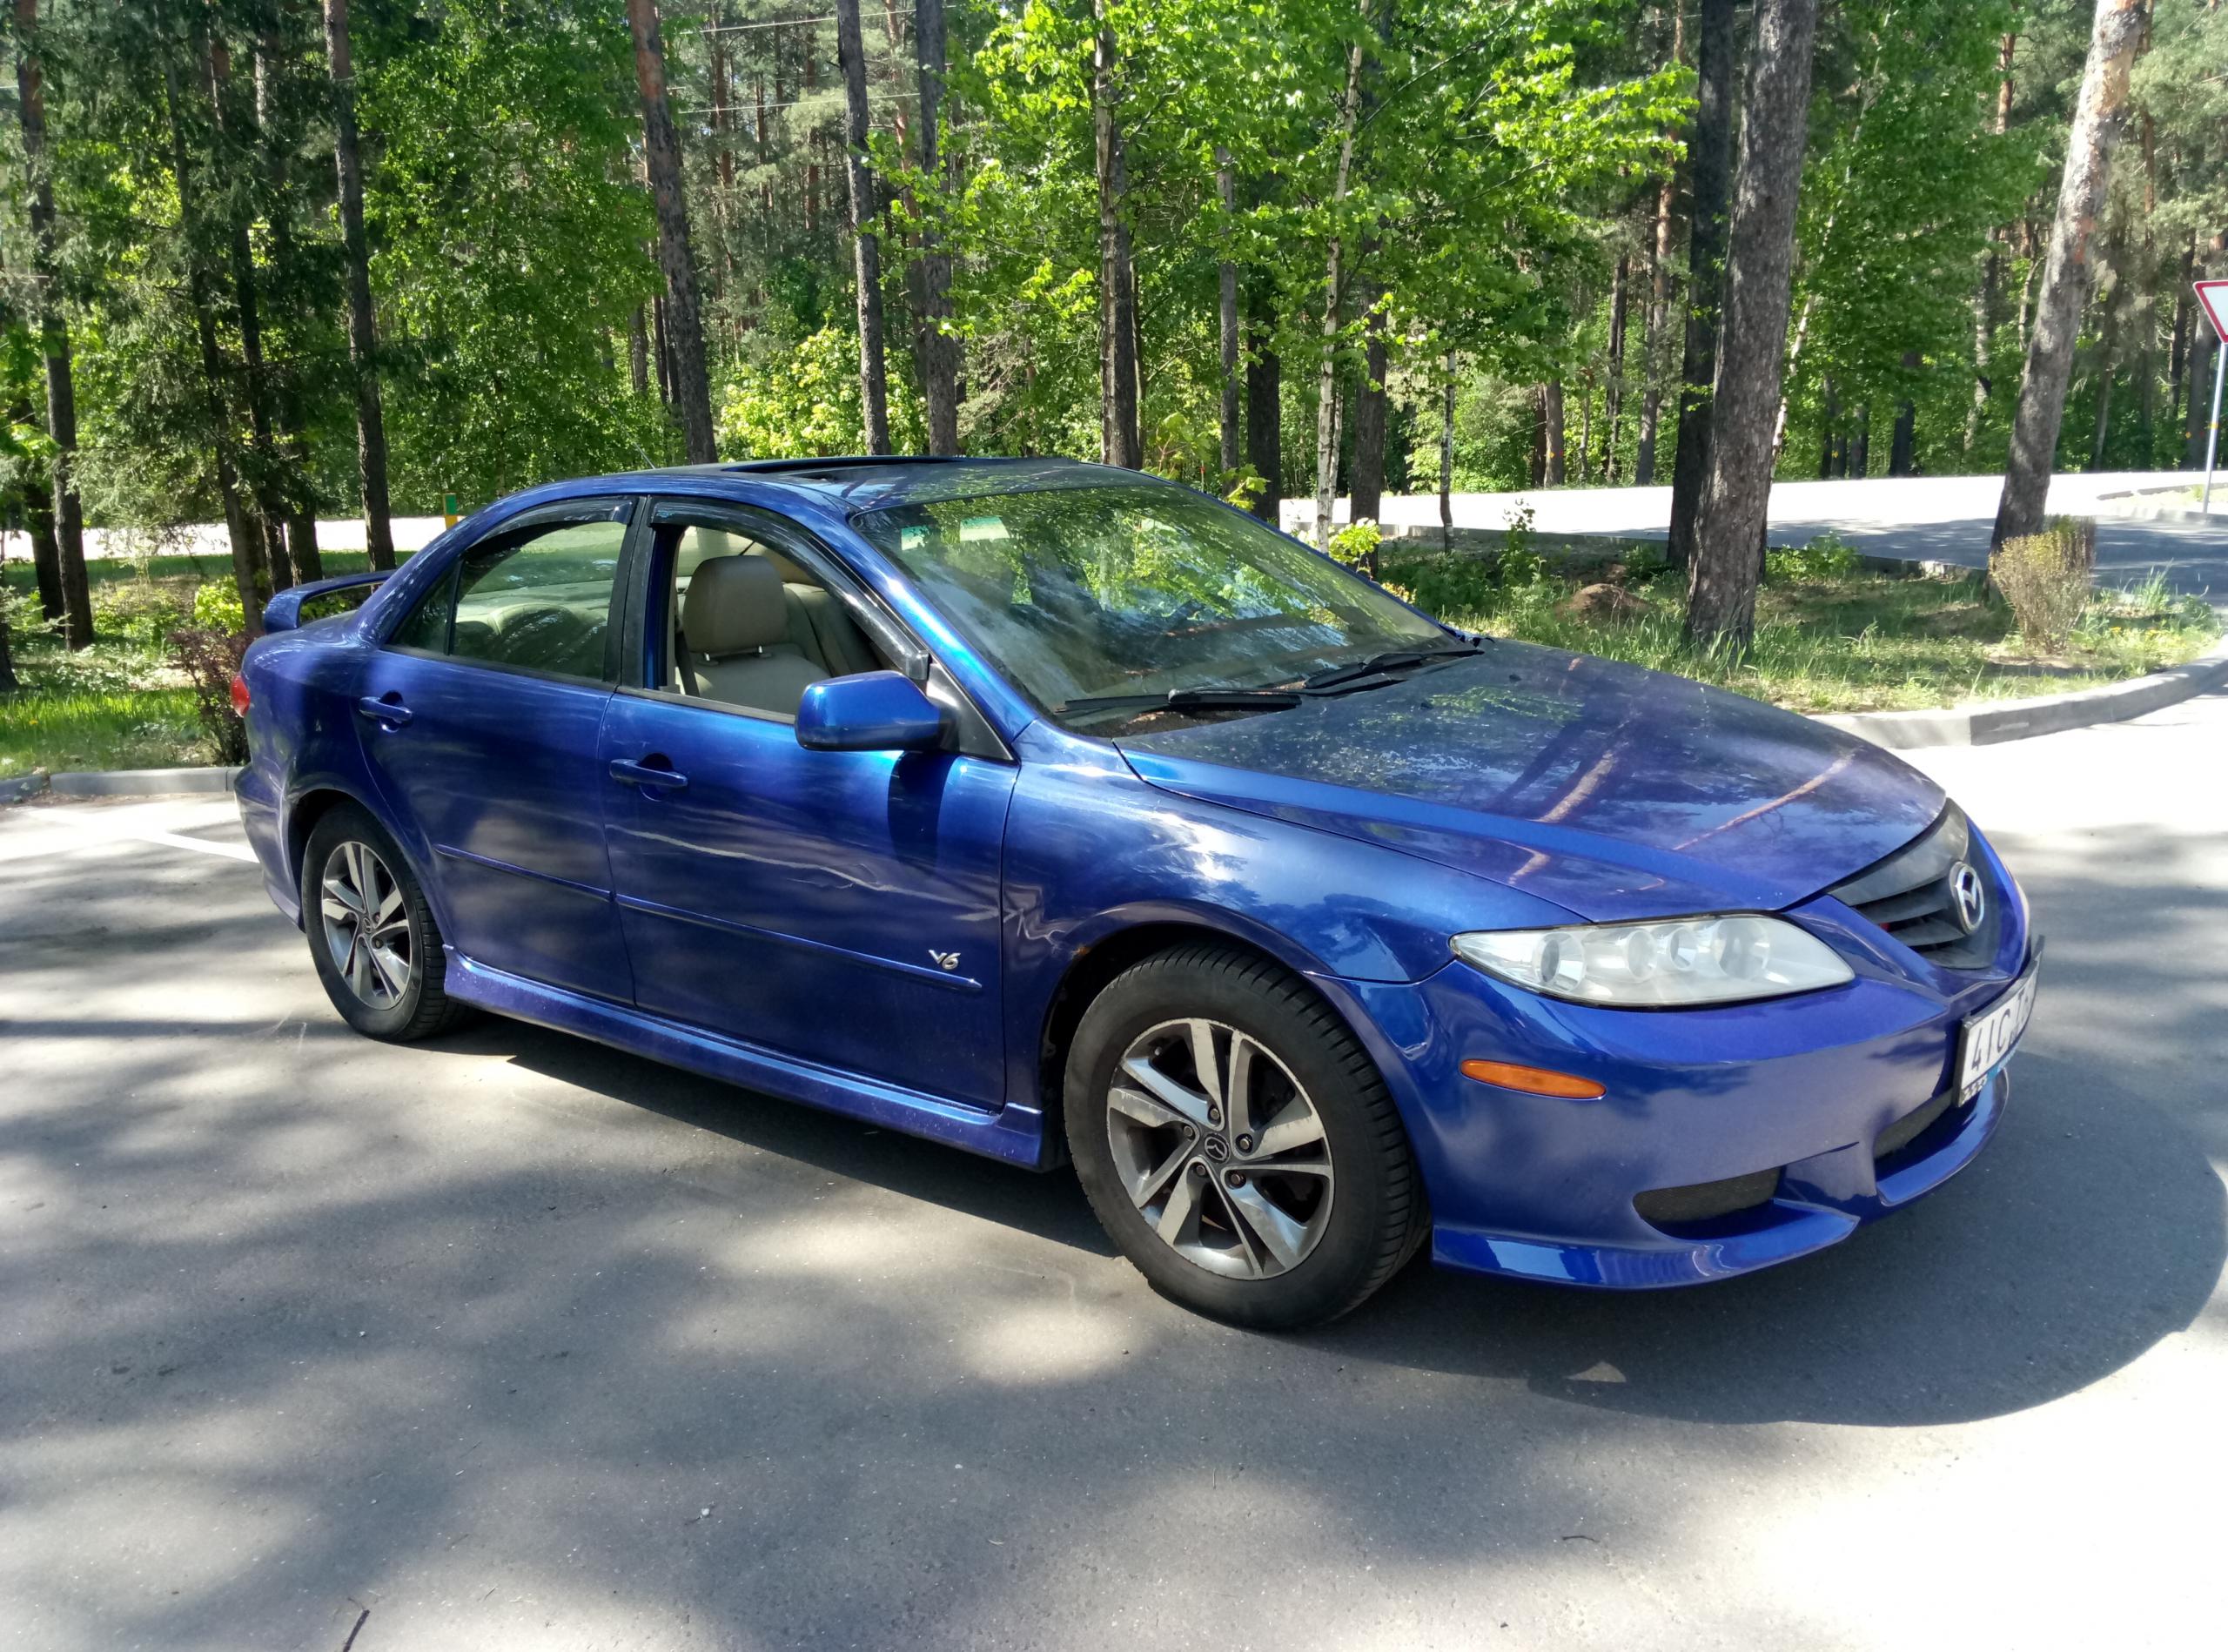 Mazda минск. Mazda 6 2004 синий. Мазда 6 2004 голубая. Мазда 6 2004 синяя. Мазда 6 2004 года седан синяя.